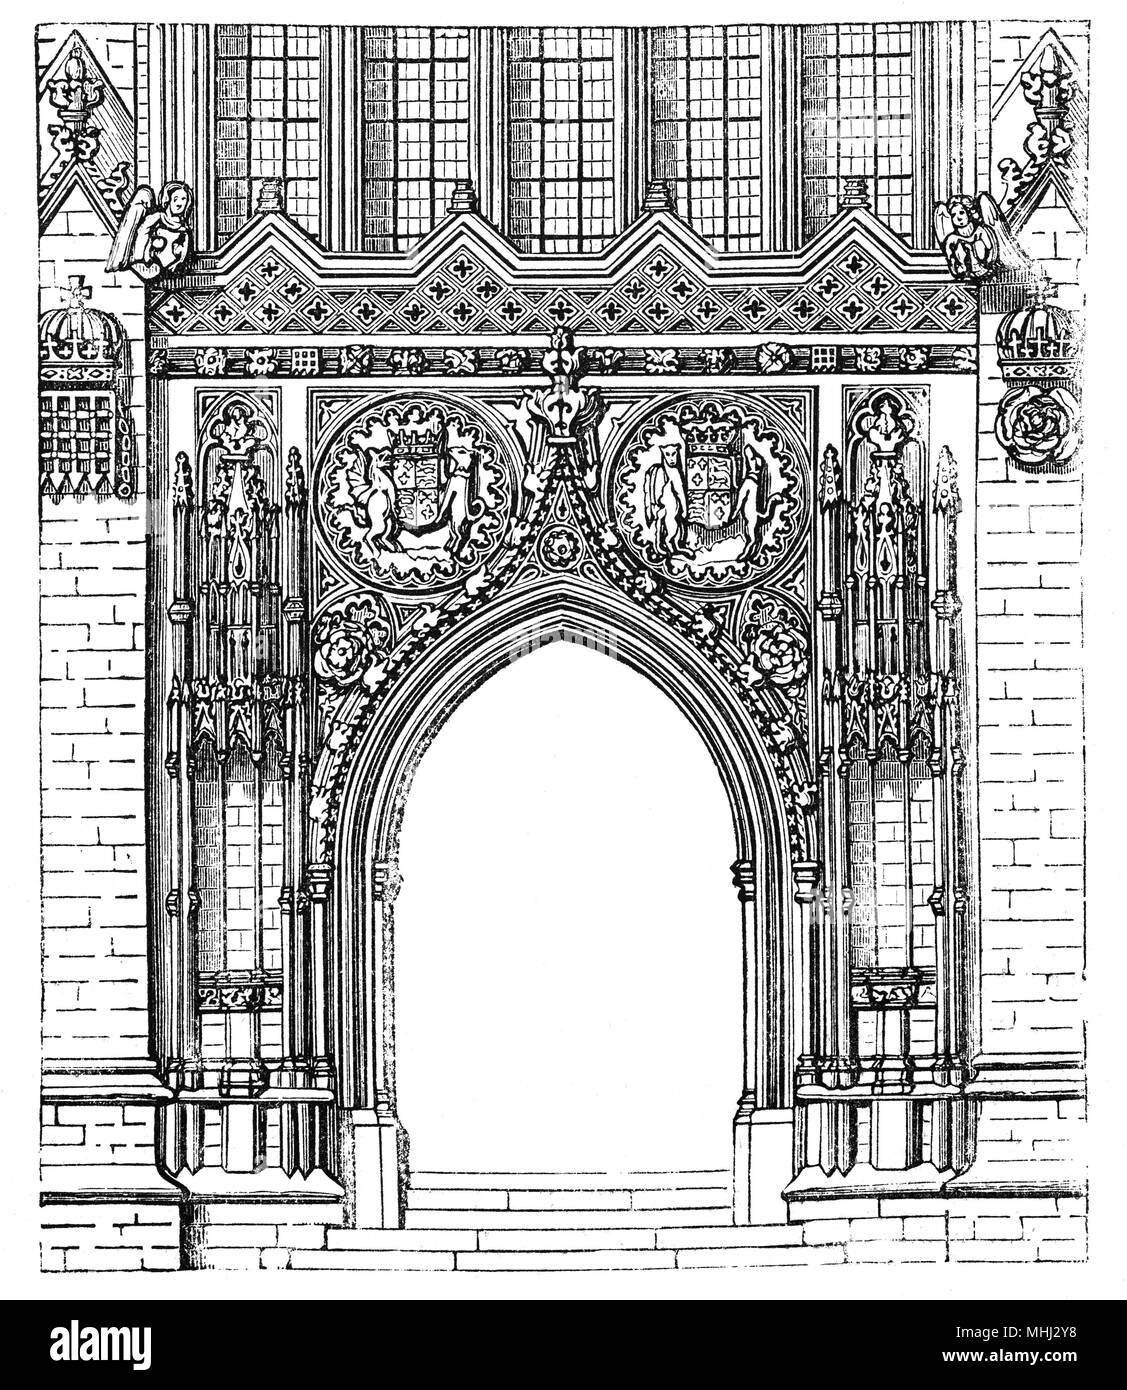 Gli ornati ingresso alla Cappella del King's College dell Università di Cambridge. Considerato uno dei migliori esempi del tardo gotico perpendicolare architettura inglese, fu costruito in più fasi da una successione di re d'Inghilterra dal 1446 al 1515, un periodo che attraversava le guerre del Rose. La cappella di grandi vetrate colorate non sono stati completati fino al 1531, e il suo primo Rinascimento rood dello schermo è stata eretta nel 1532-36. La cappella è attiva una casa di culto e la casa del re College coro. Foto Stock